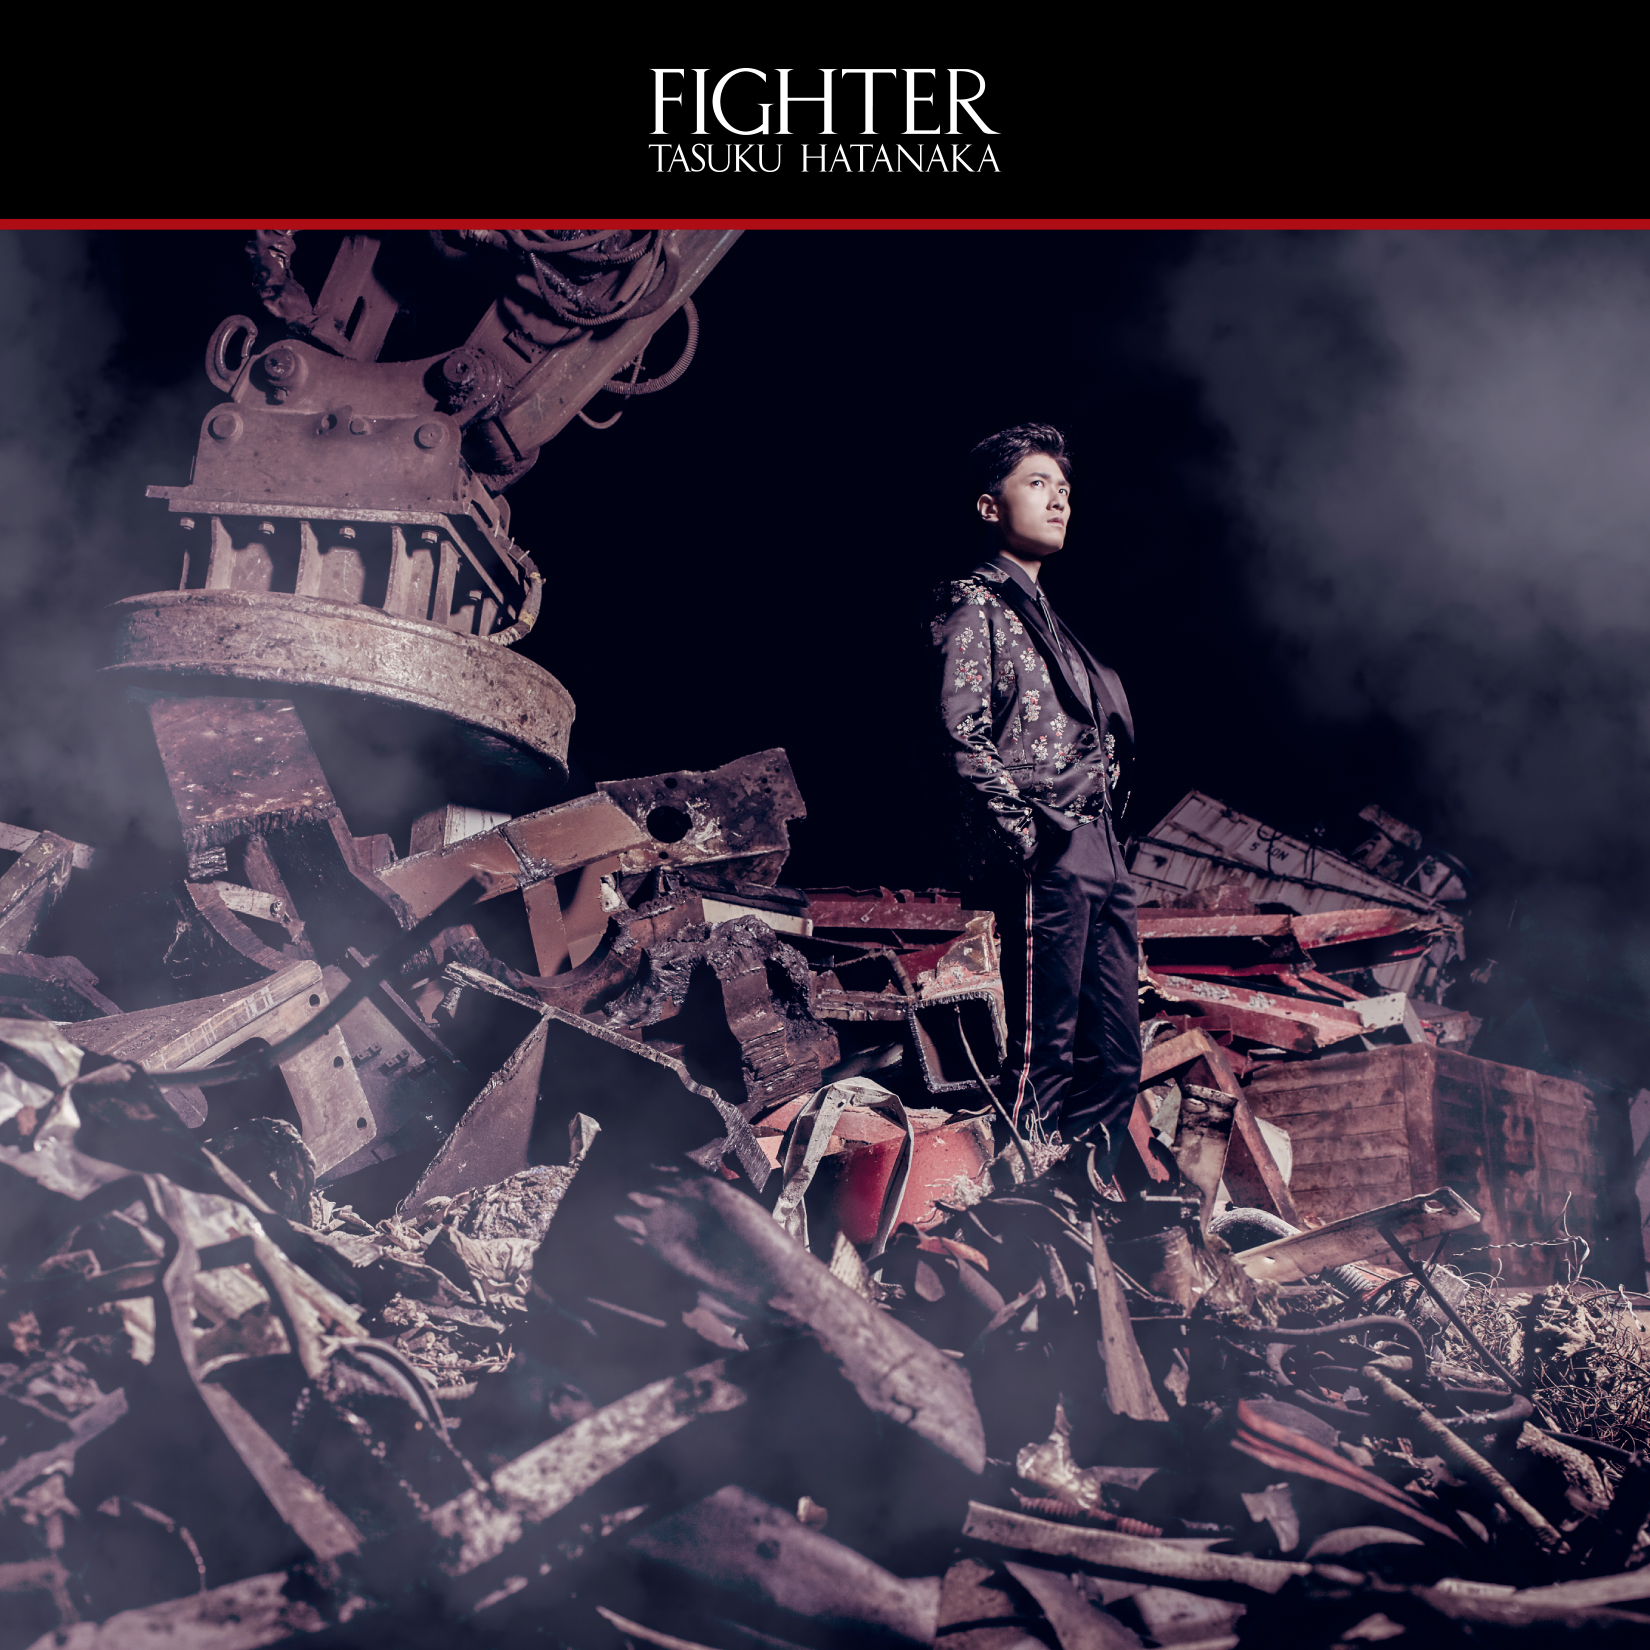 畠中祐3月27日發售首張專輯「FIGHTER」。藝人照片、唱片封面照片、收錄 